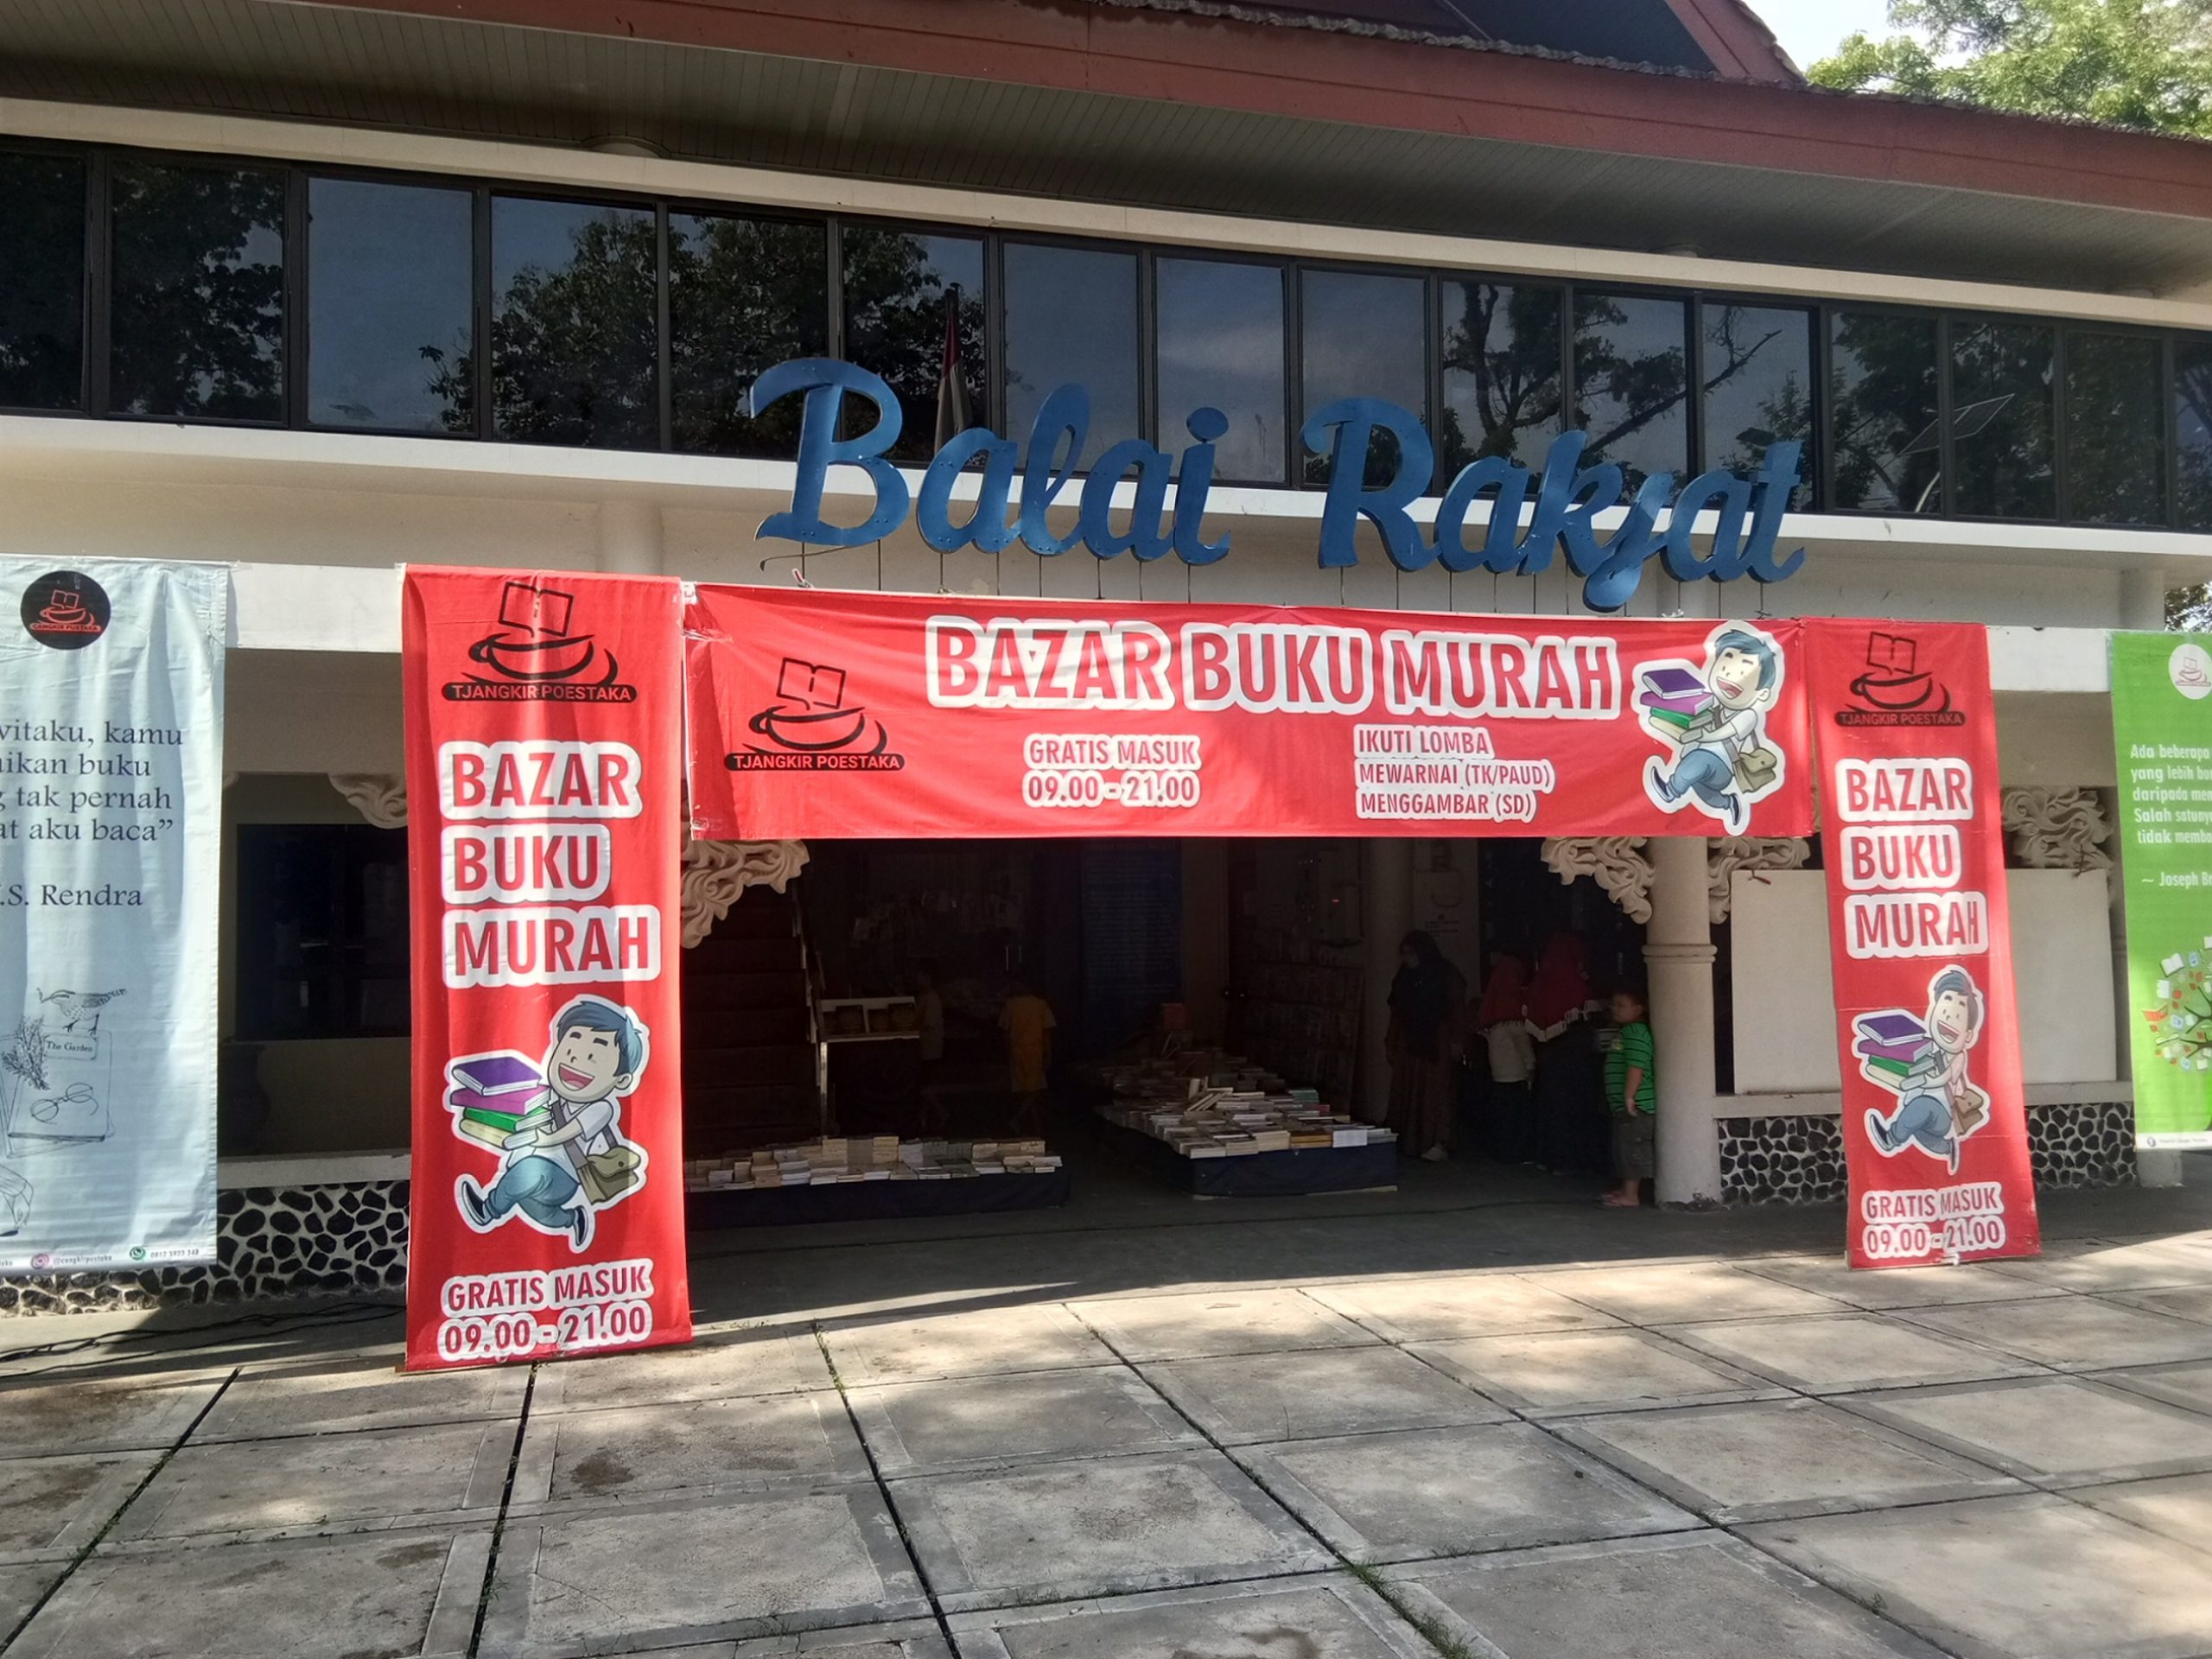 Bazar Buku Murah Barabai 2019 di Gedung Balai Rakyat